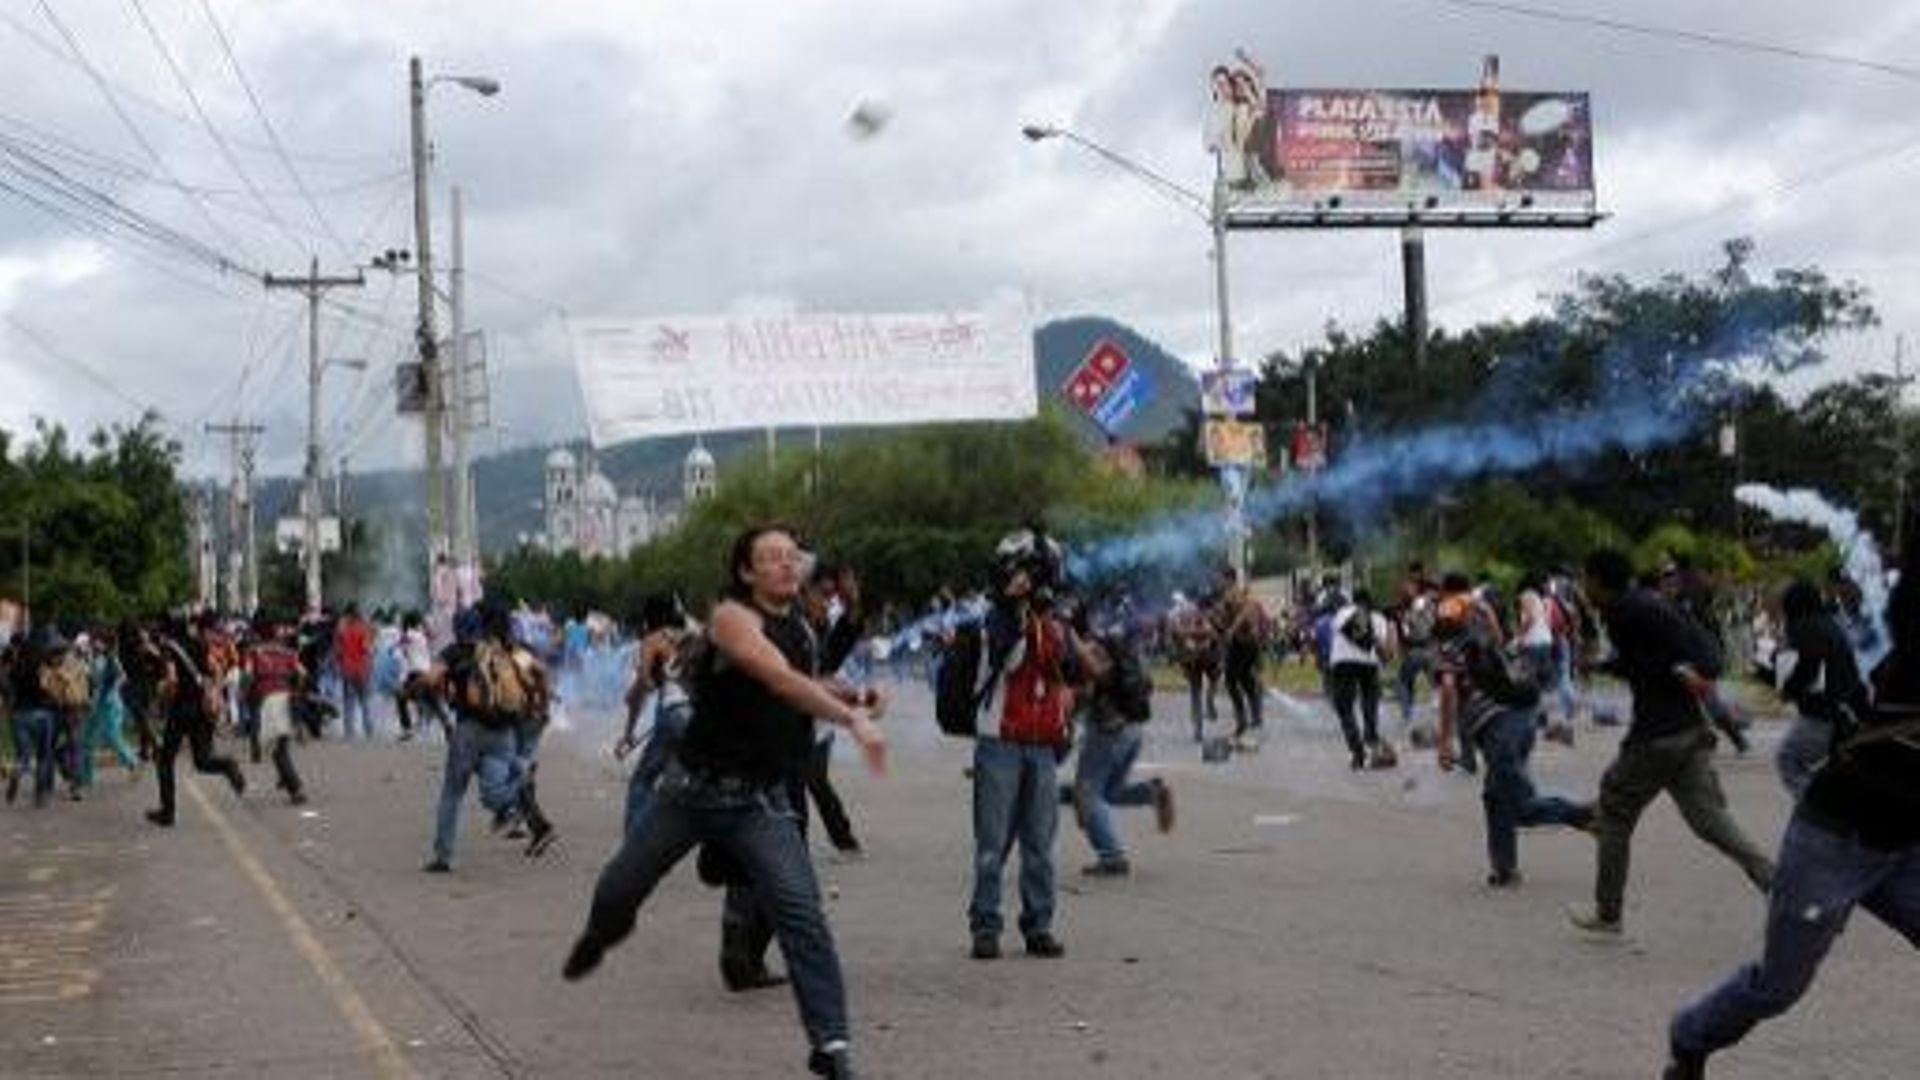 Des supporters de la candidate de gauche Xiomara Castro manifestent contre l'élection à la présidence de Juan Orlando Hernandez, le 27 novembre 2013 à Tegucigalpa, au Honduras